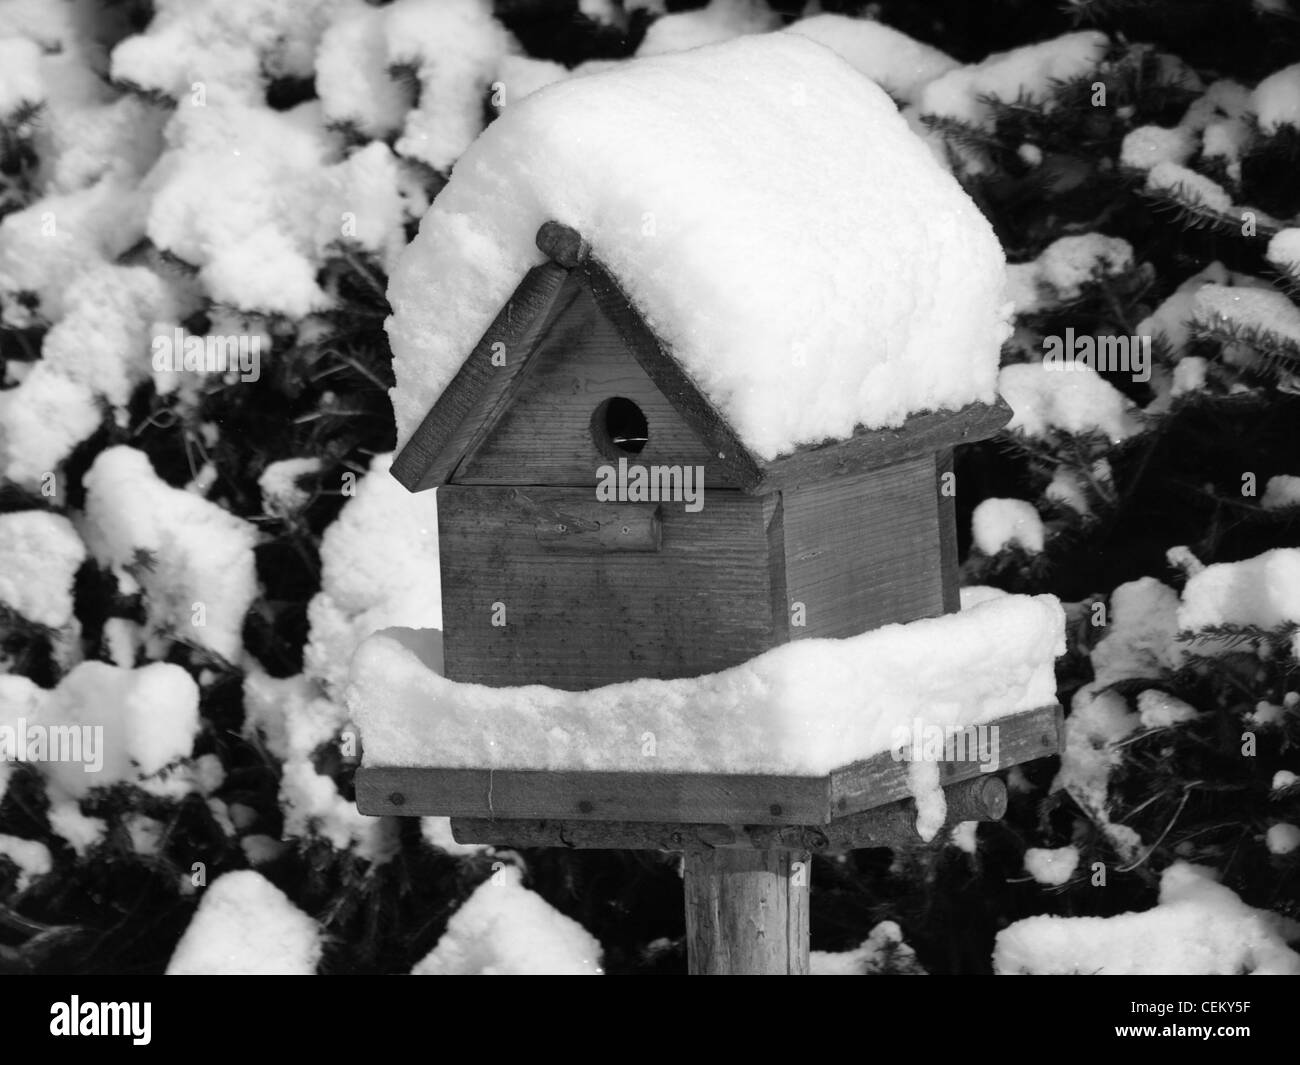 Snowy casita para aves, en blanco y negro / verschneites Vogelhaus, schwarz/weiß Foto de stock